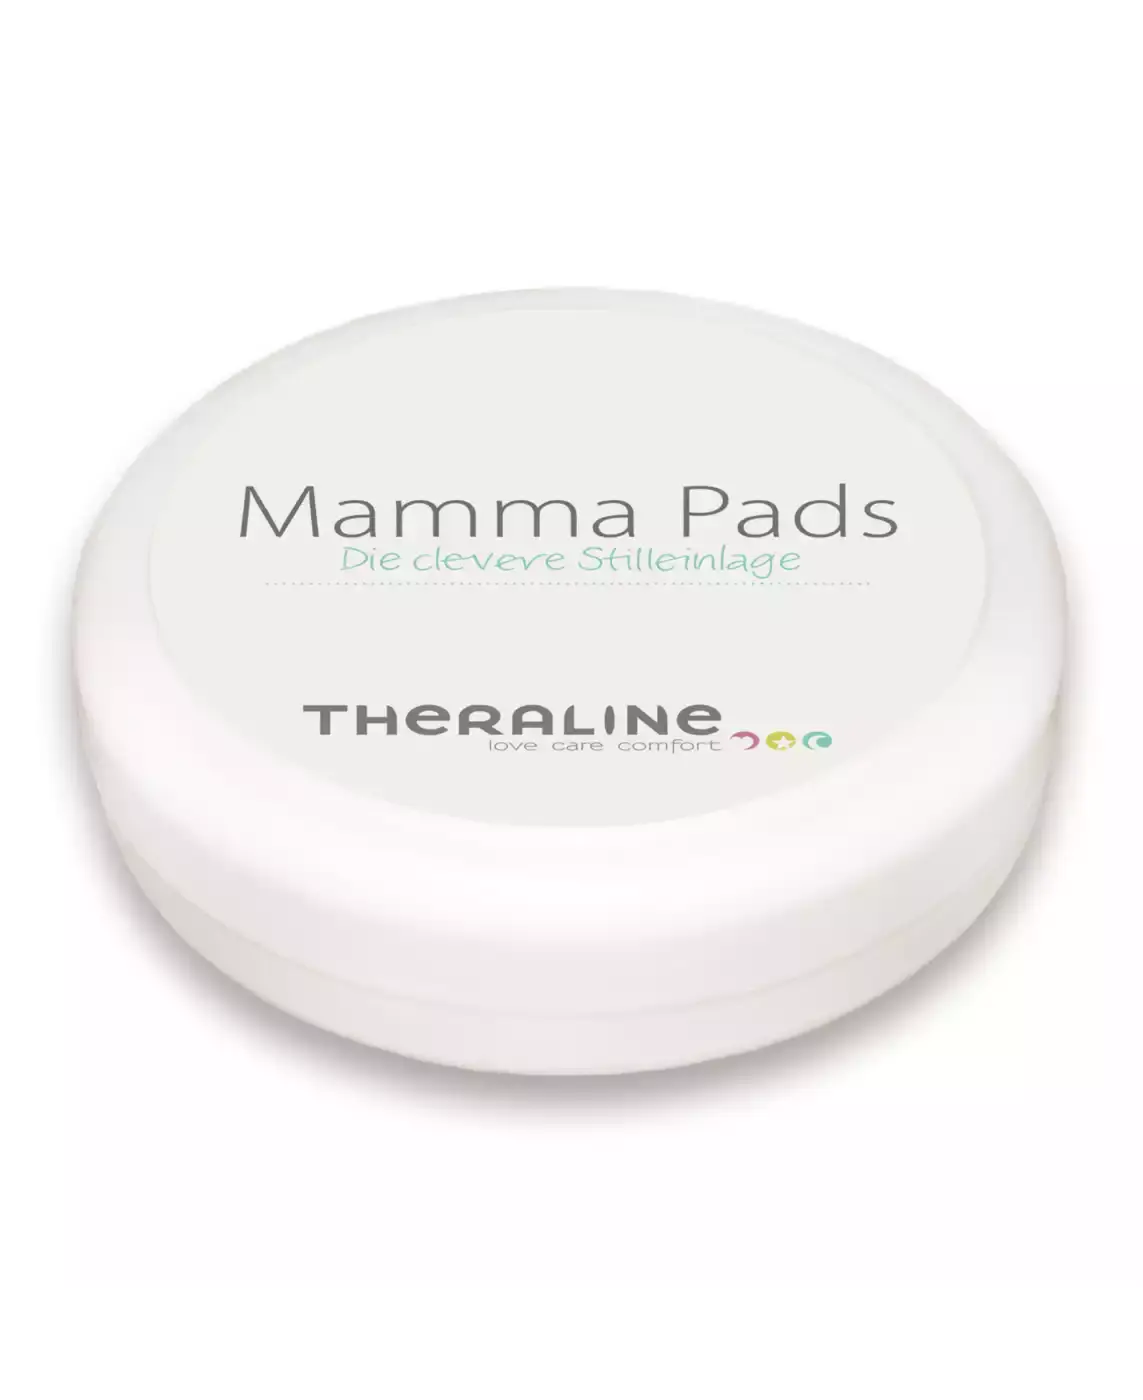 Mamma Pads - Silikonstilleinlage THERALINE Transparent Weiß 2000537335505 7